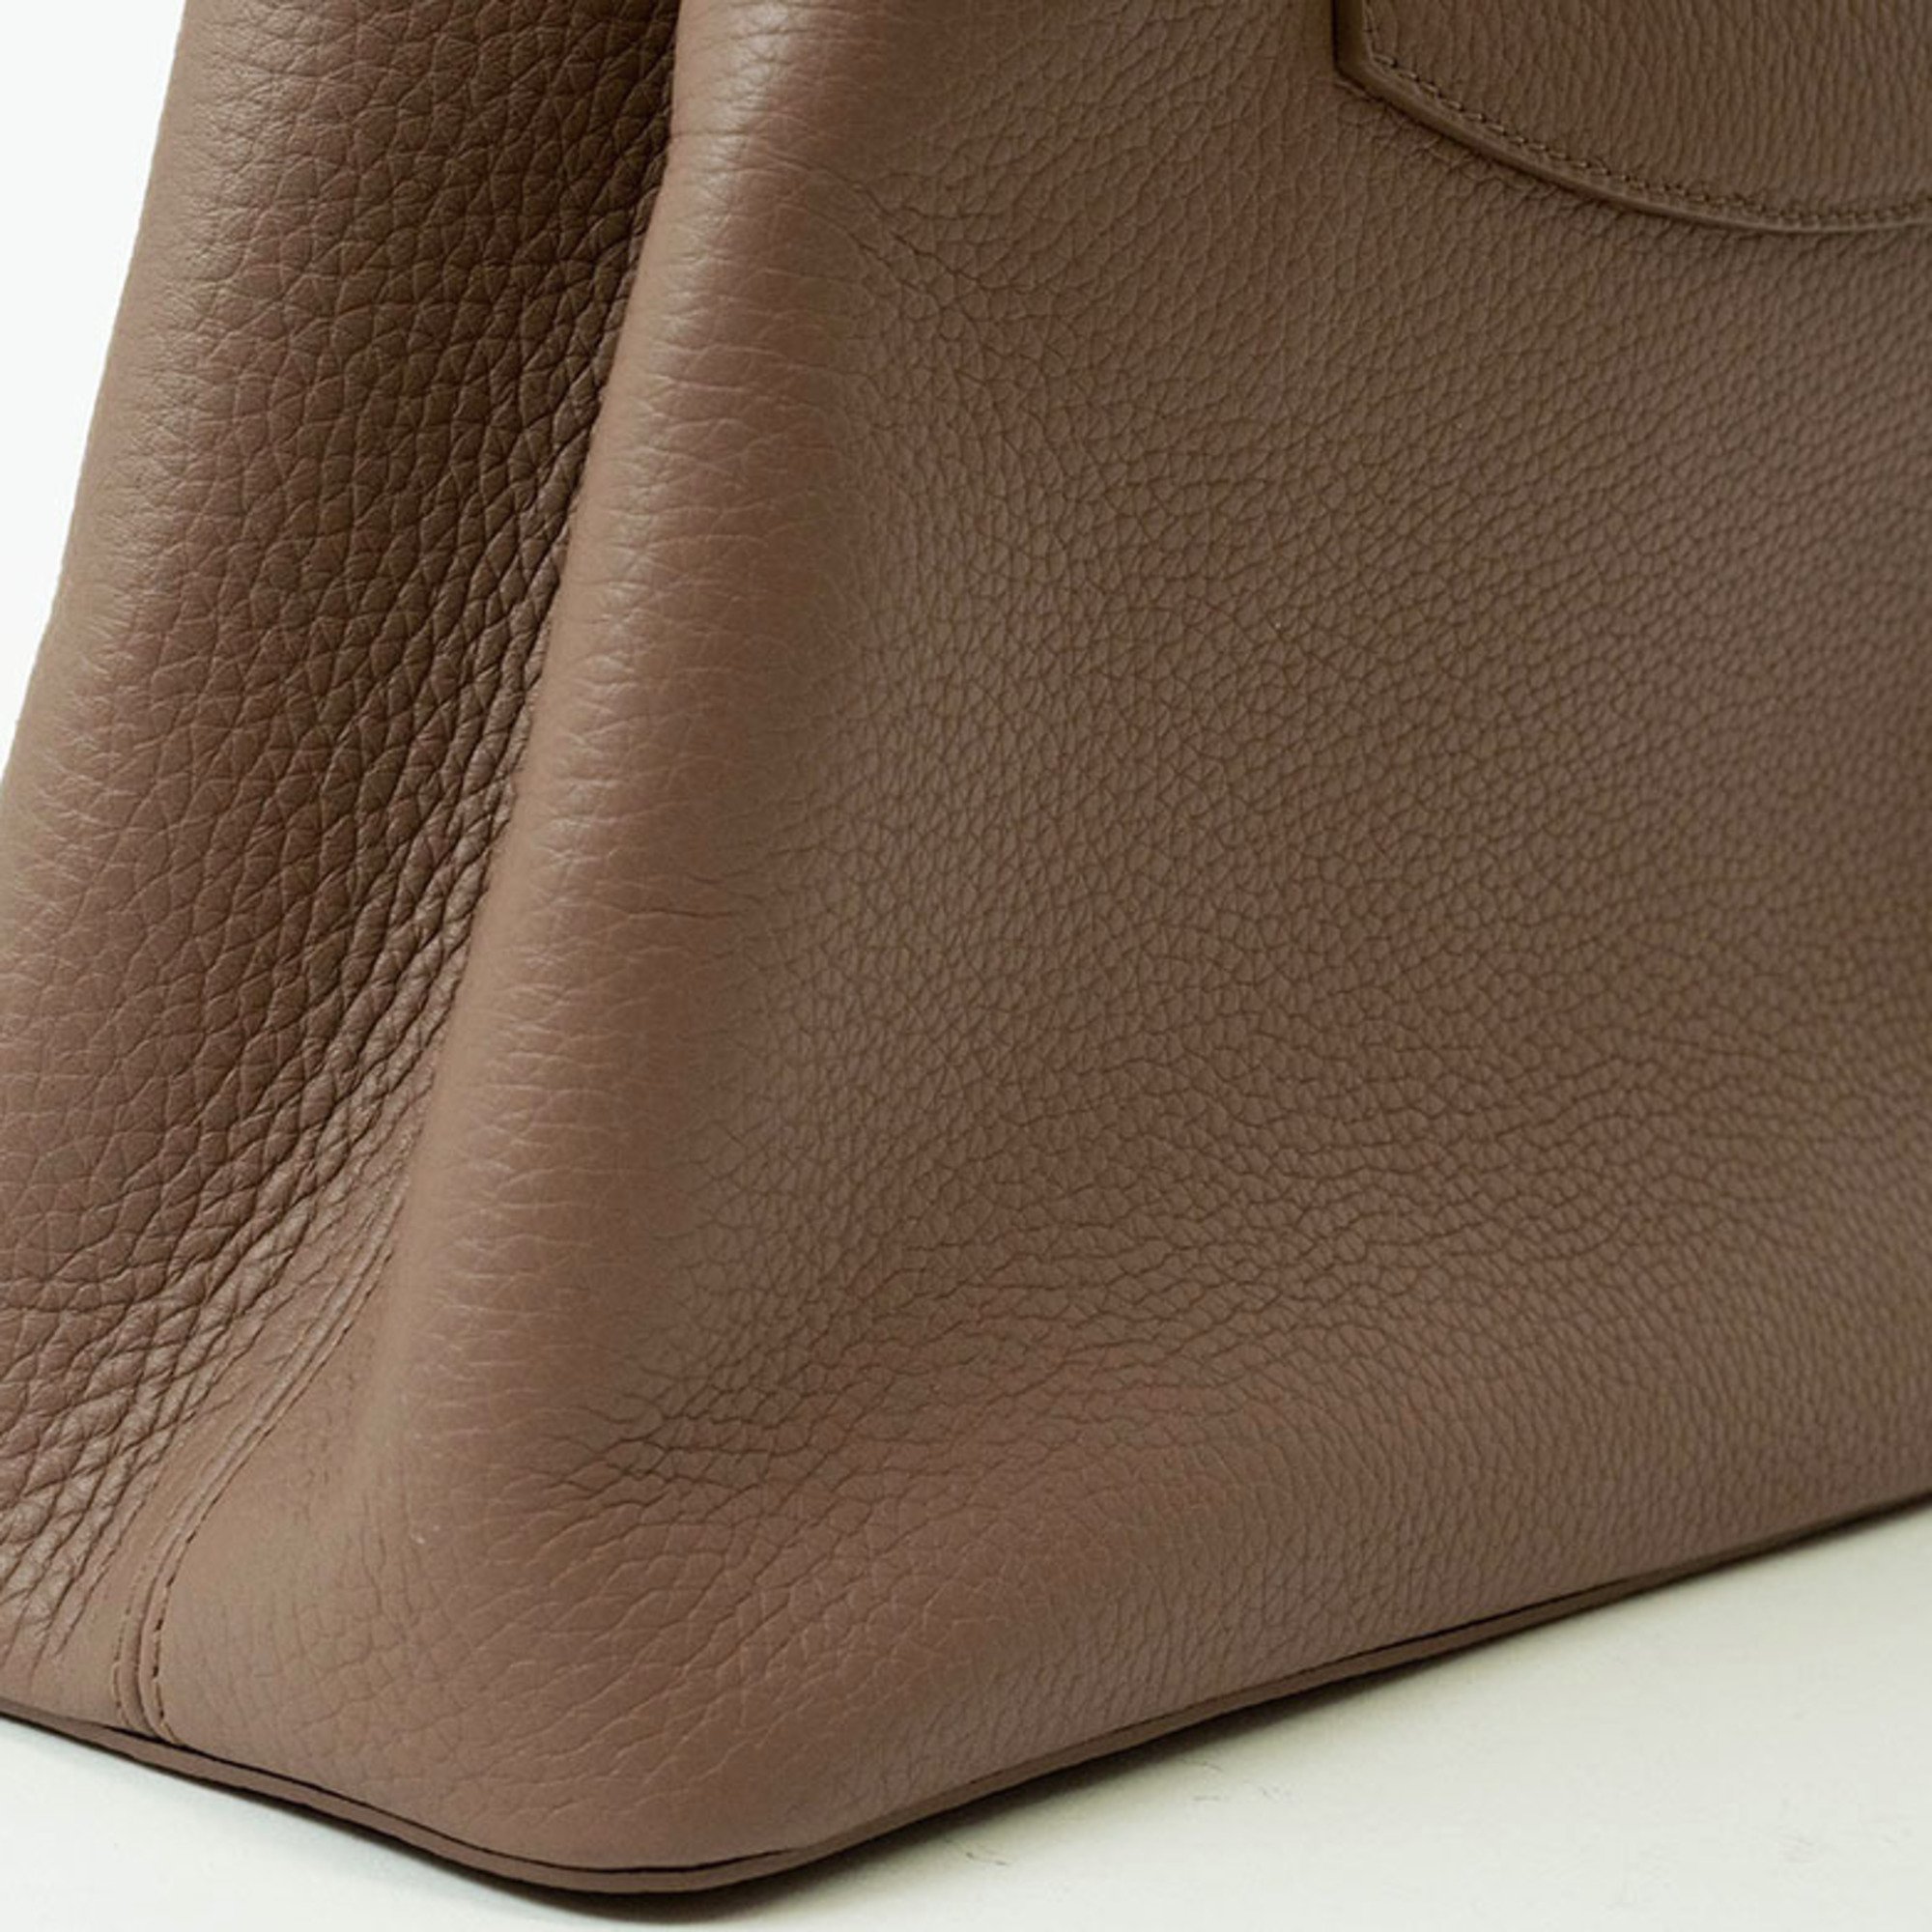 Louis Vuitton Capucines PM Handbag Pink Beige M54882 Women's LOUIS VUITTON